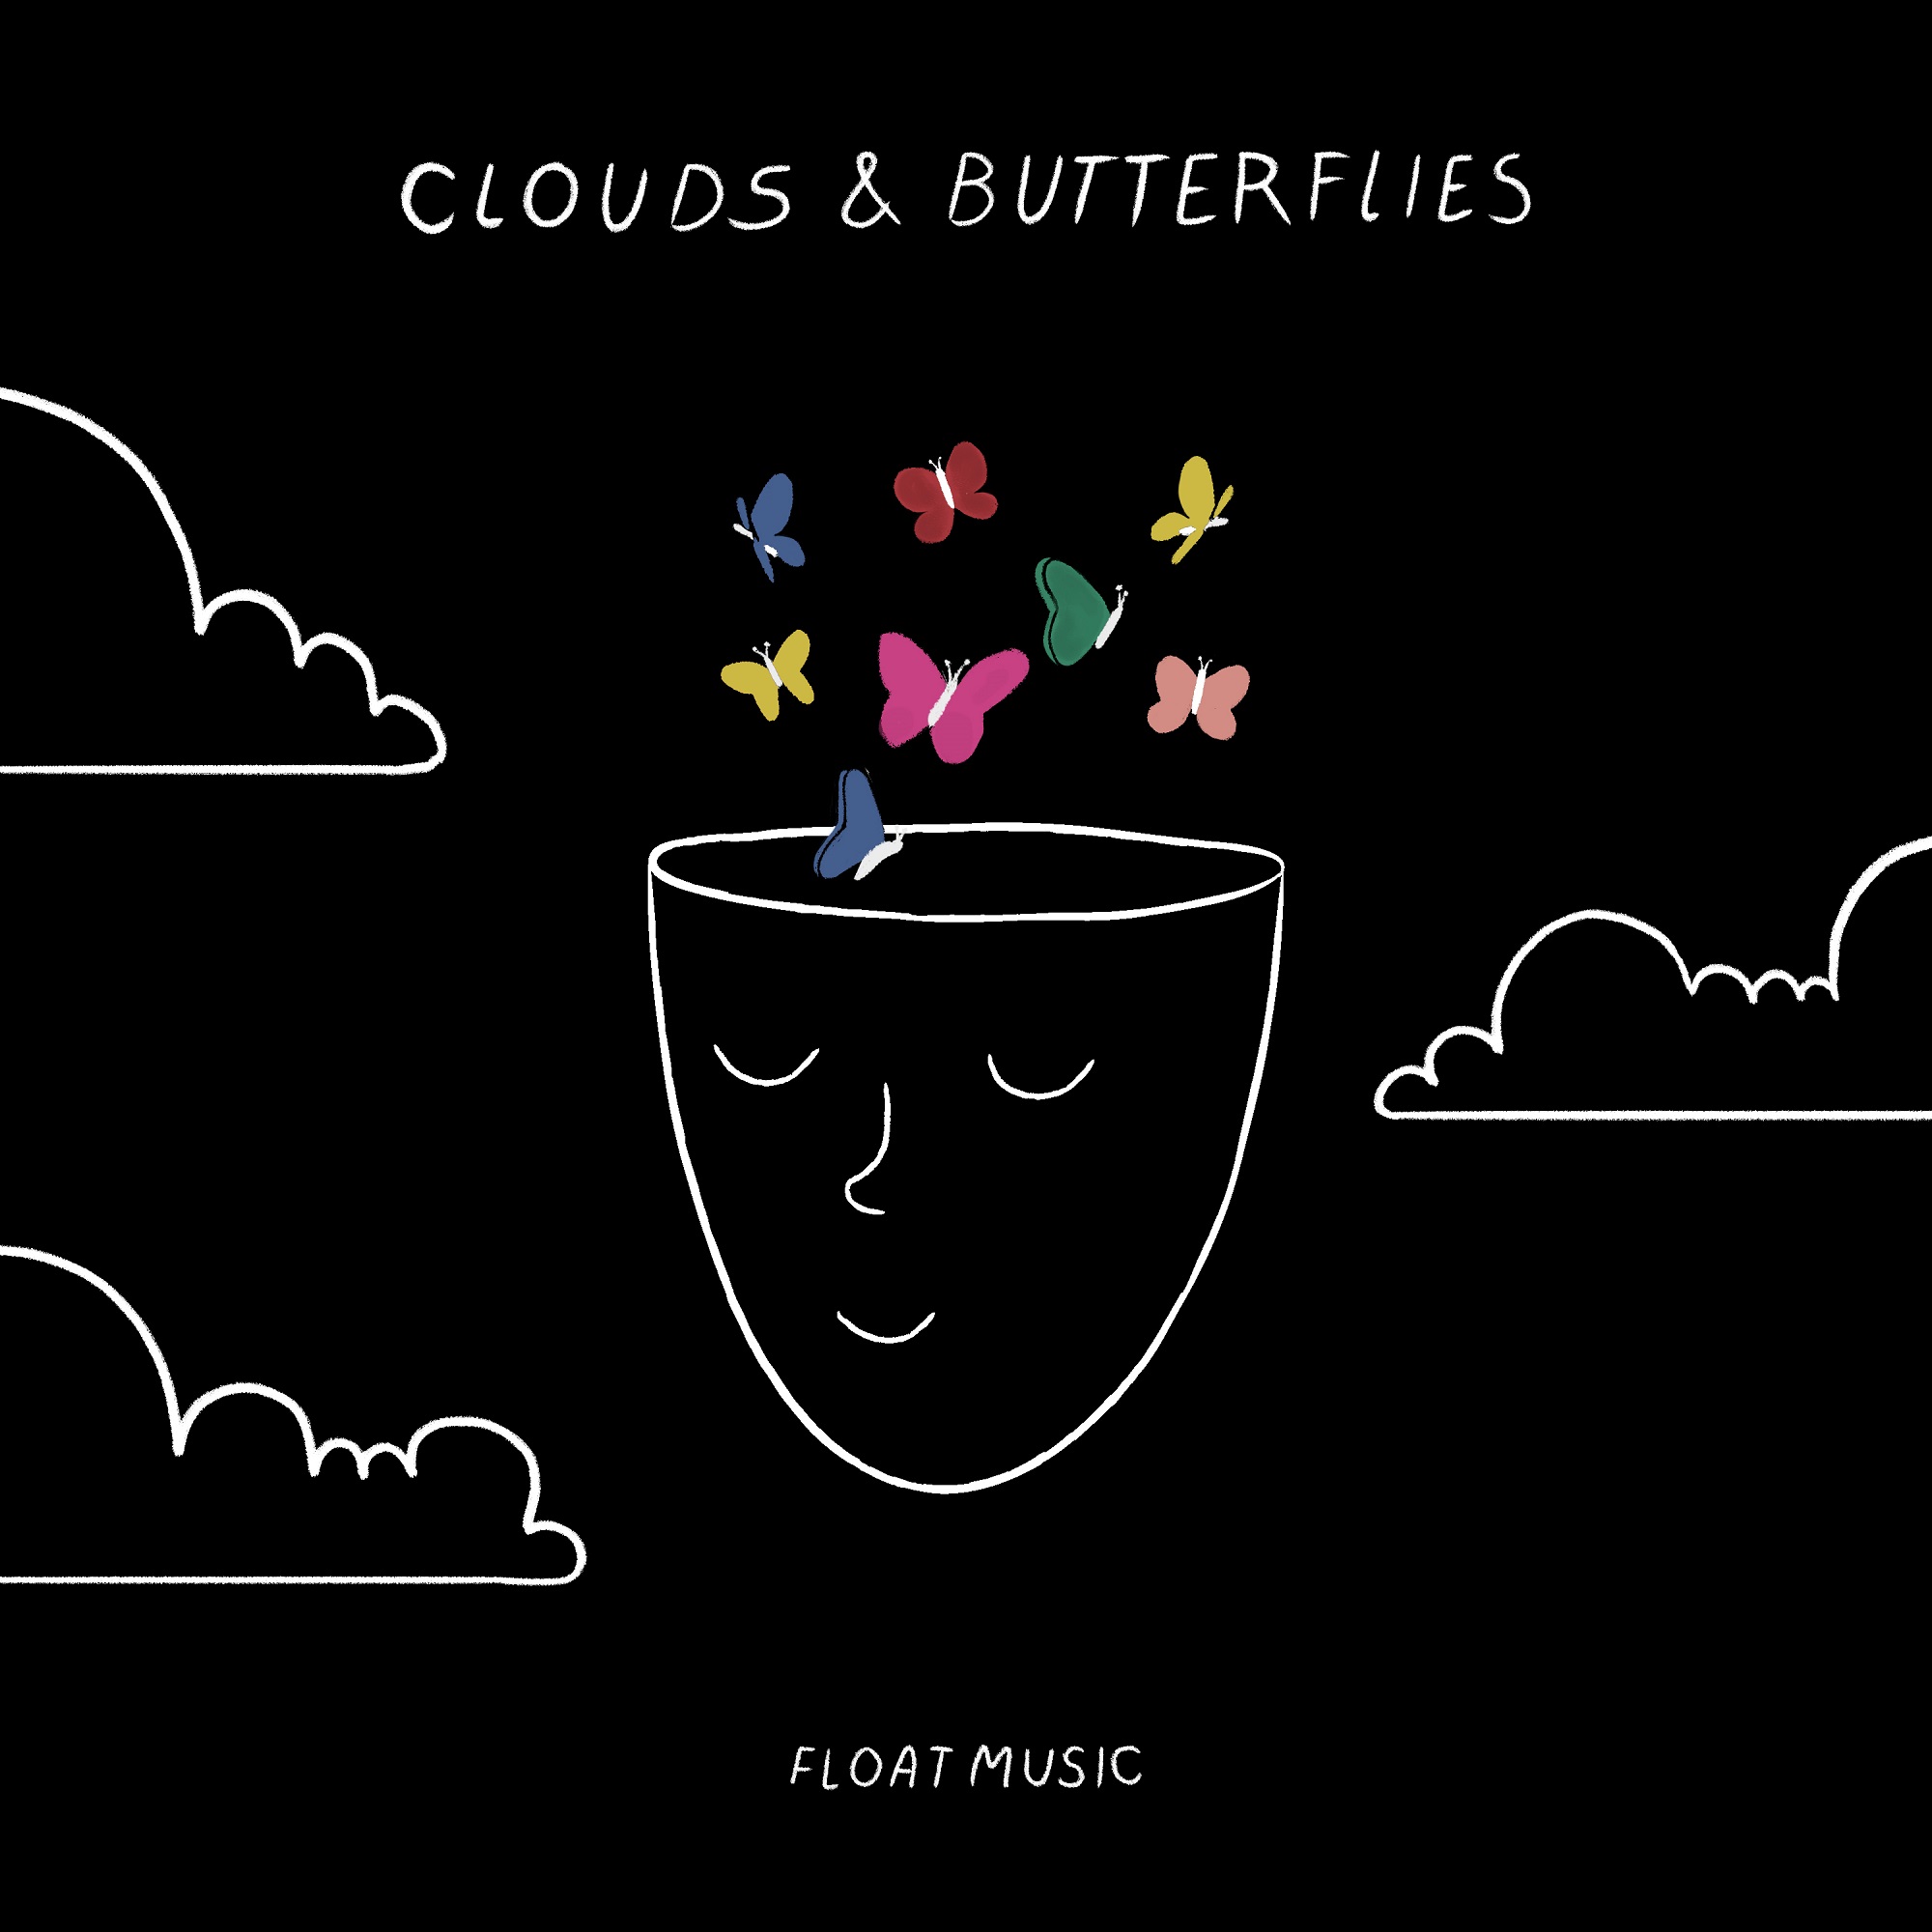 Float Music – “Clouds & Butterflies”